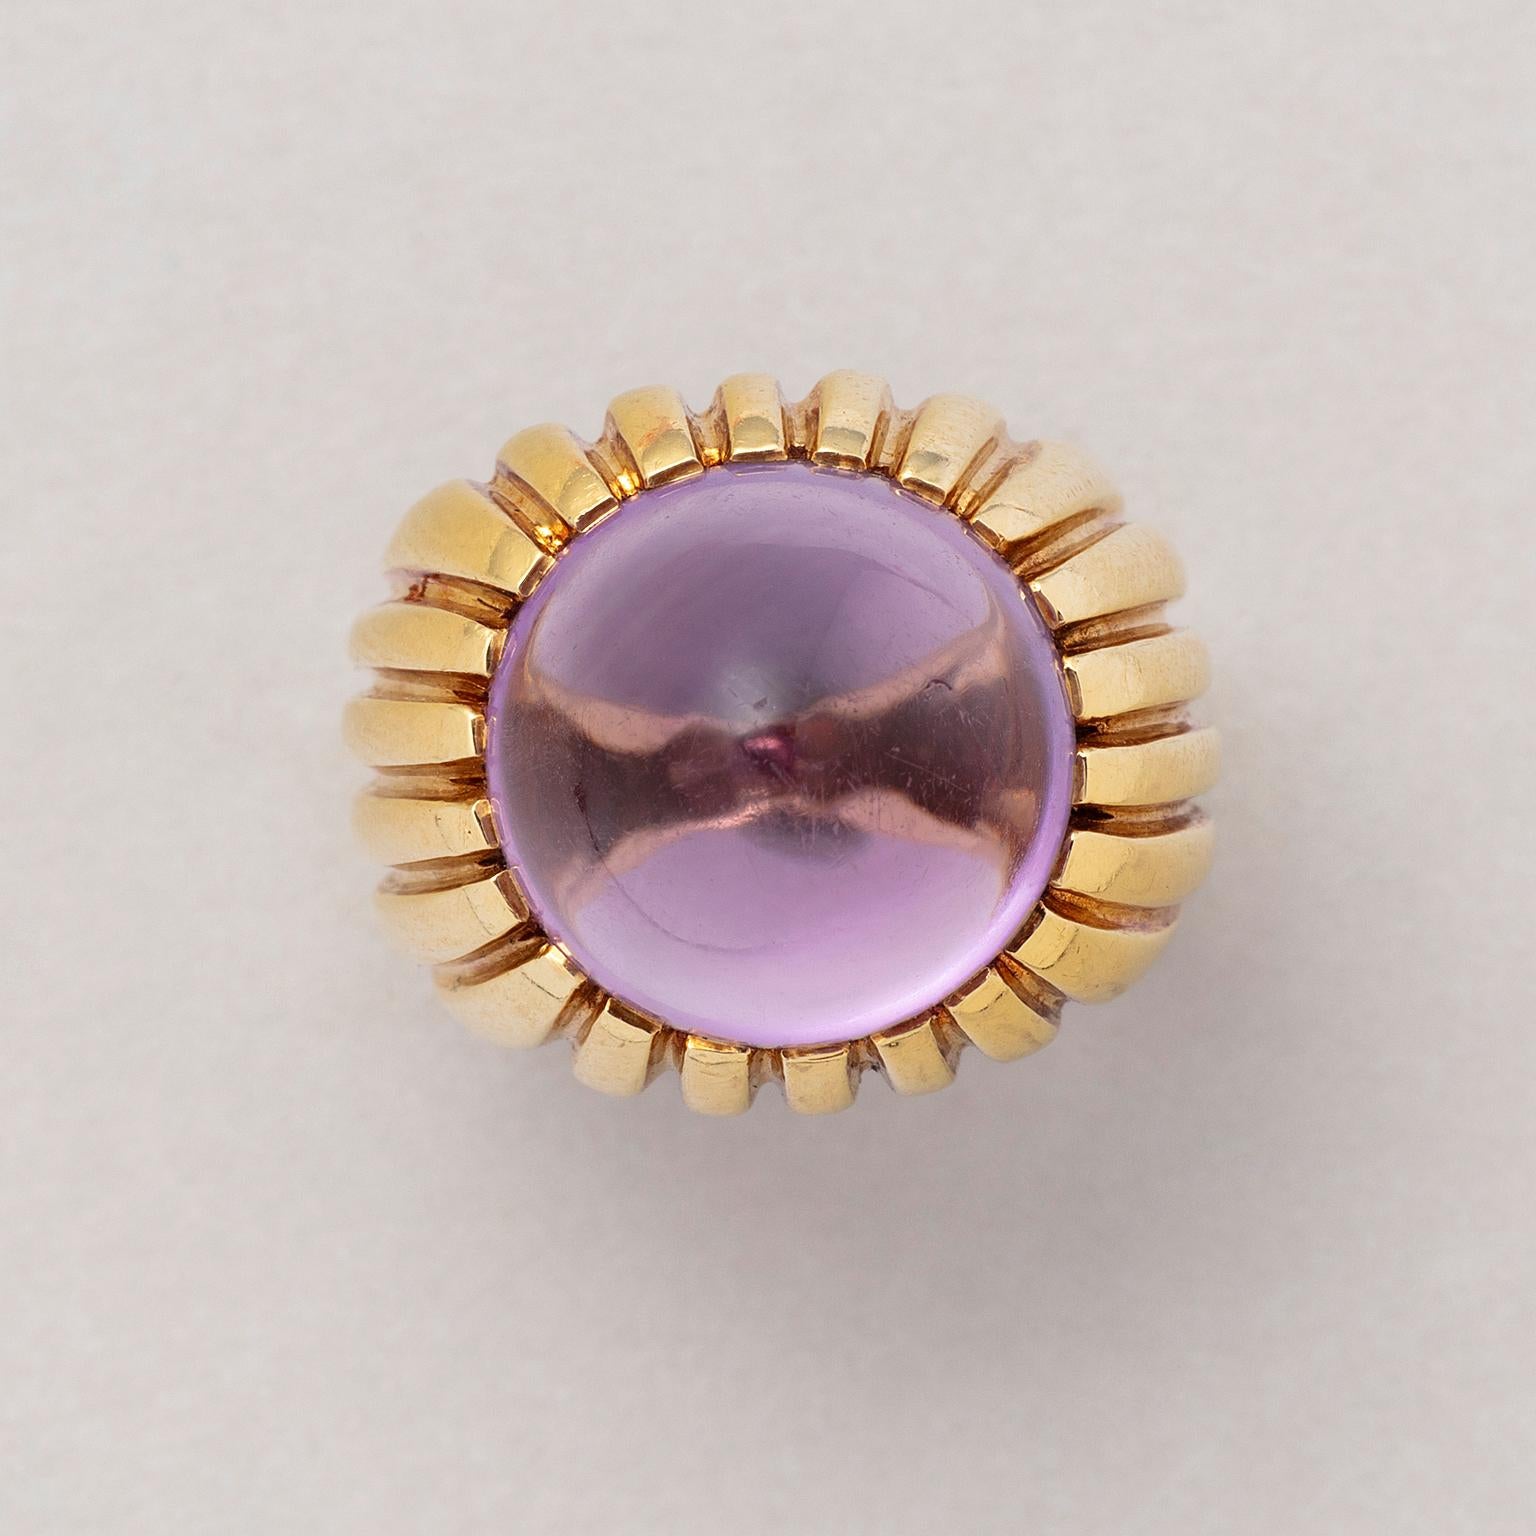 Ein vertikal gerippter Ring aus 18 Karat Gelbgold, besetzt mit einem runden, spitzen Amethysten im Cabochon-Schliff. Unterzeichnet: Fred, Paris, um 1980.

Gewicht: 14,45 Gramm
Größe: 16,25 mm / 5 1/2 US
Breite: 5,5 - 12 mm